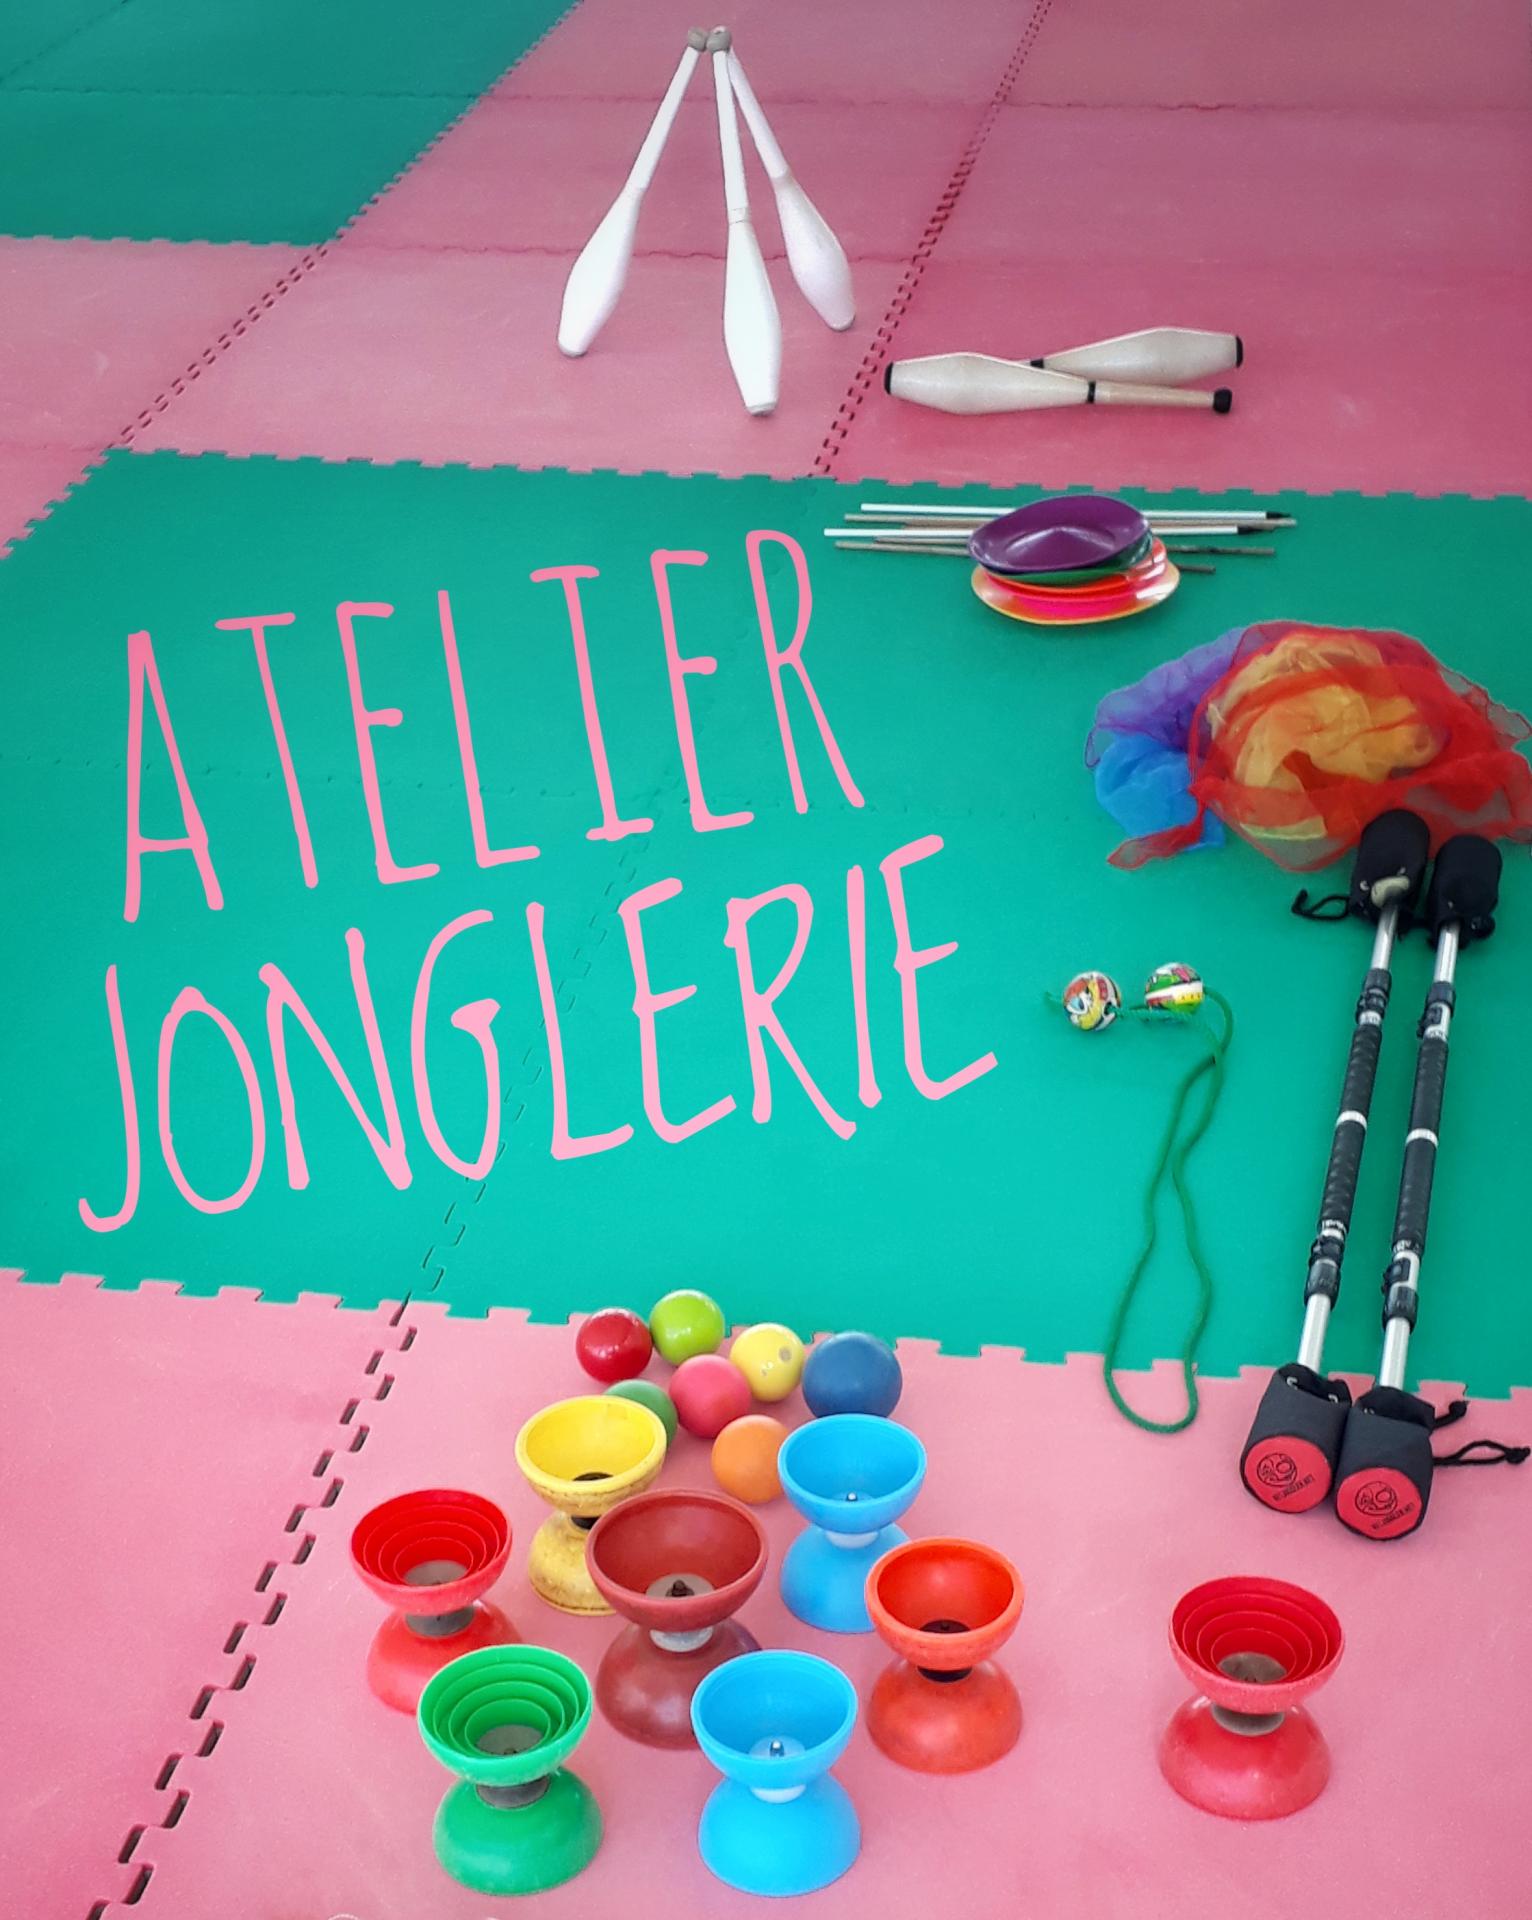 Atelier Jonglerie